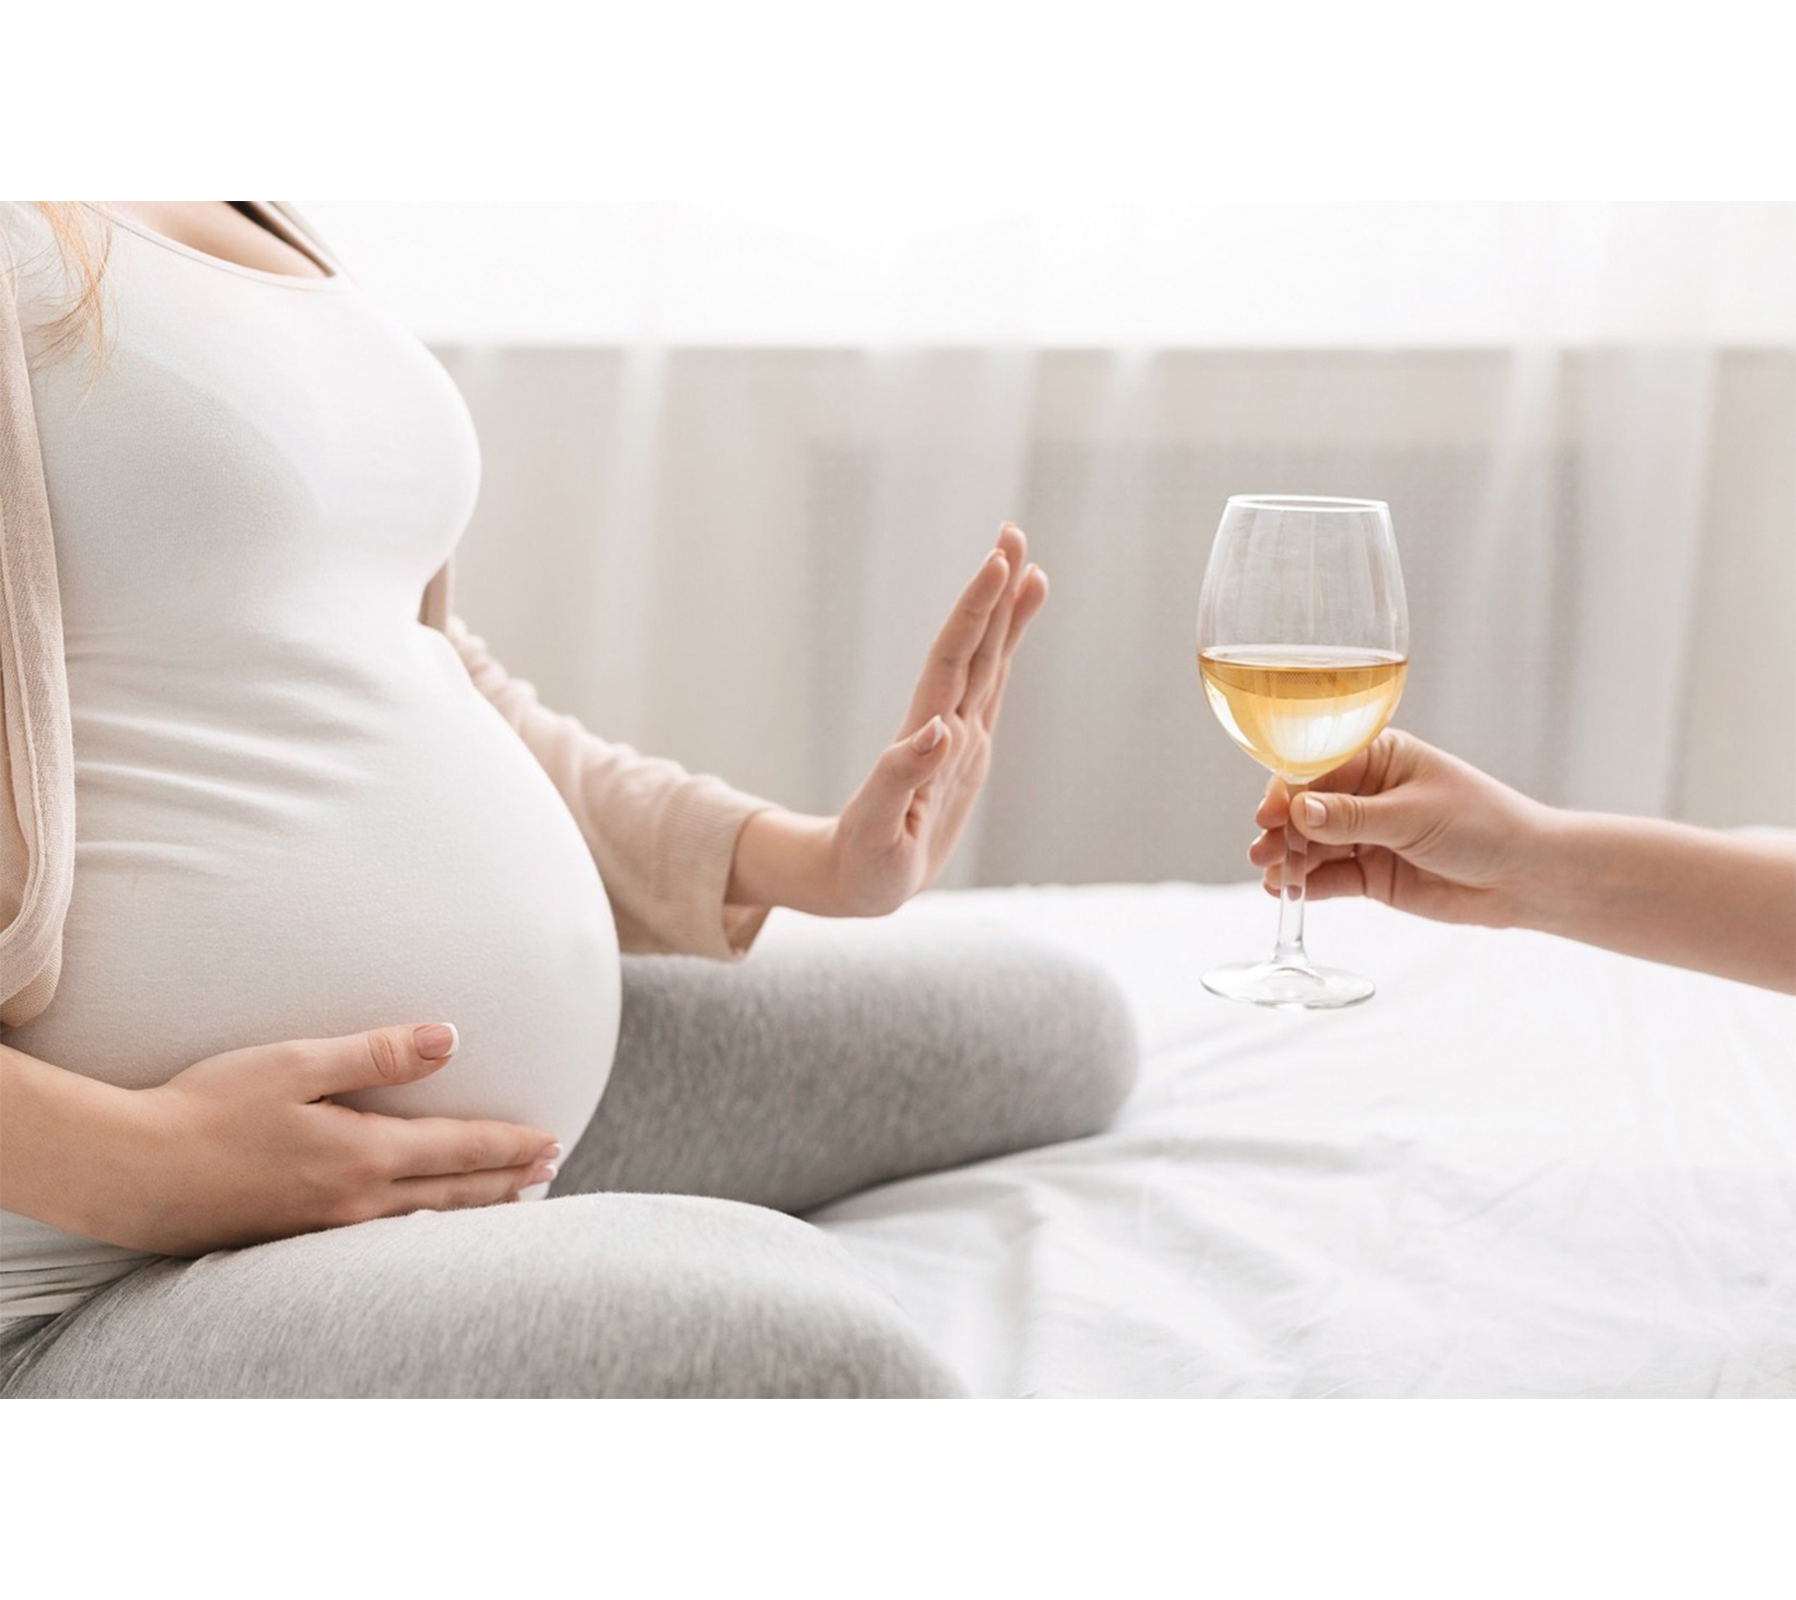 Употребление алкоголя во время беременности негативно отражается на состоянии эмбриона и приводит к непоправимым последствиям для здоровья женщины.